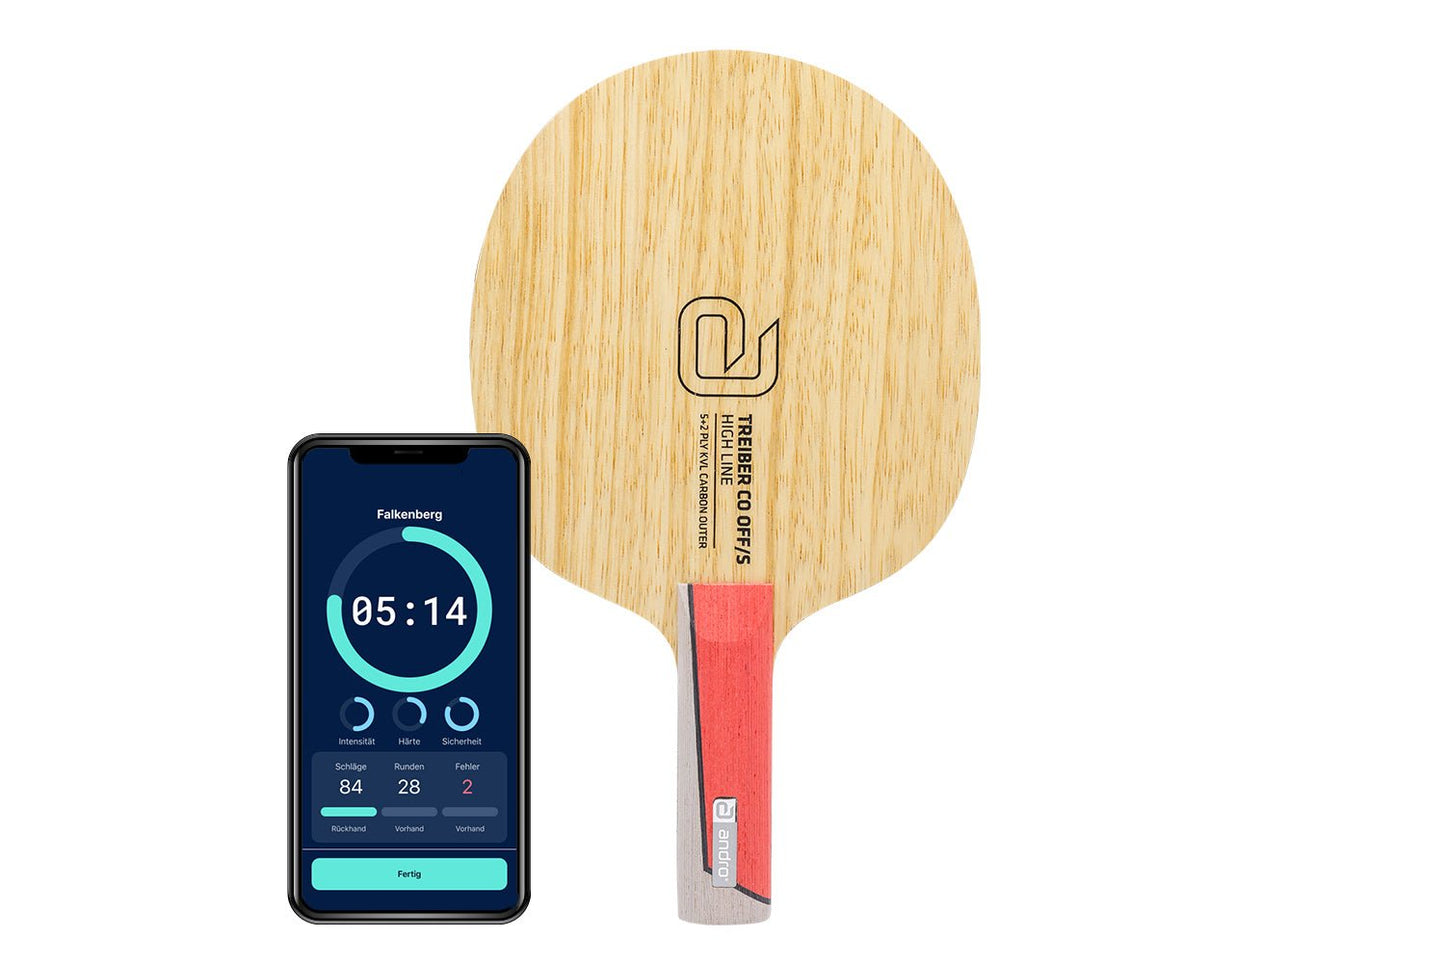 andro Treiber CO OFF/S Tischtennisschläger mit geradem Griff und Smartphone zeigt Daten des Schlägers vor weißem Hintergrund